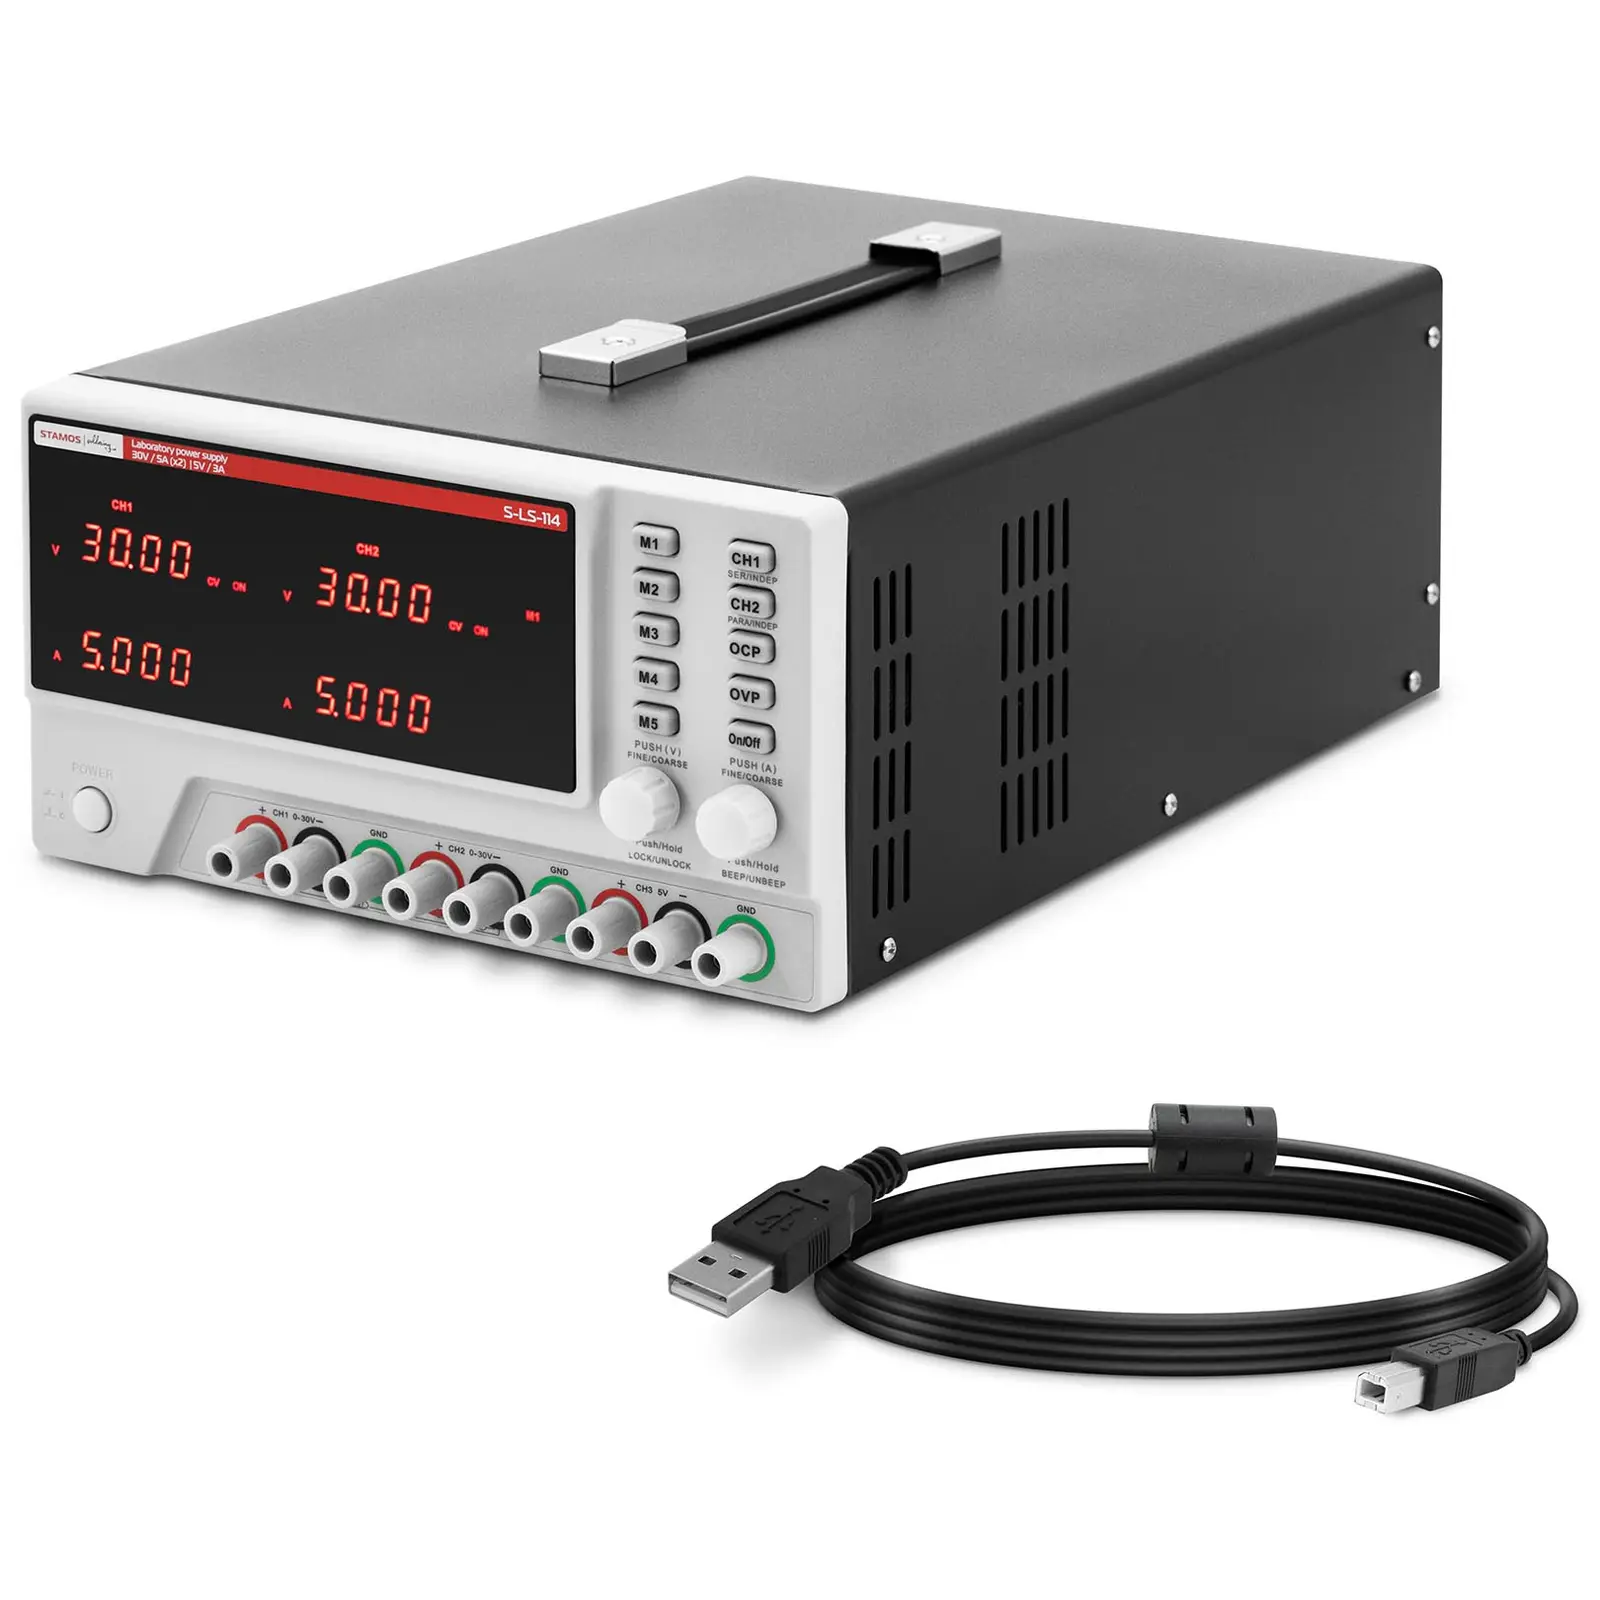 Laboratoriovirtalähde - 0 - 30 V - 0 - 5 A DC - 2 x 150 W + 15 W - 5 muistipaikkaa - LED-näyttö - USB/RS232